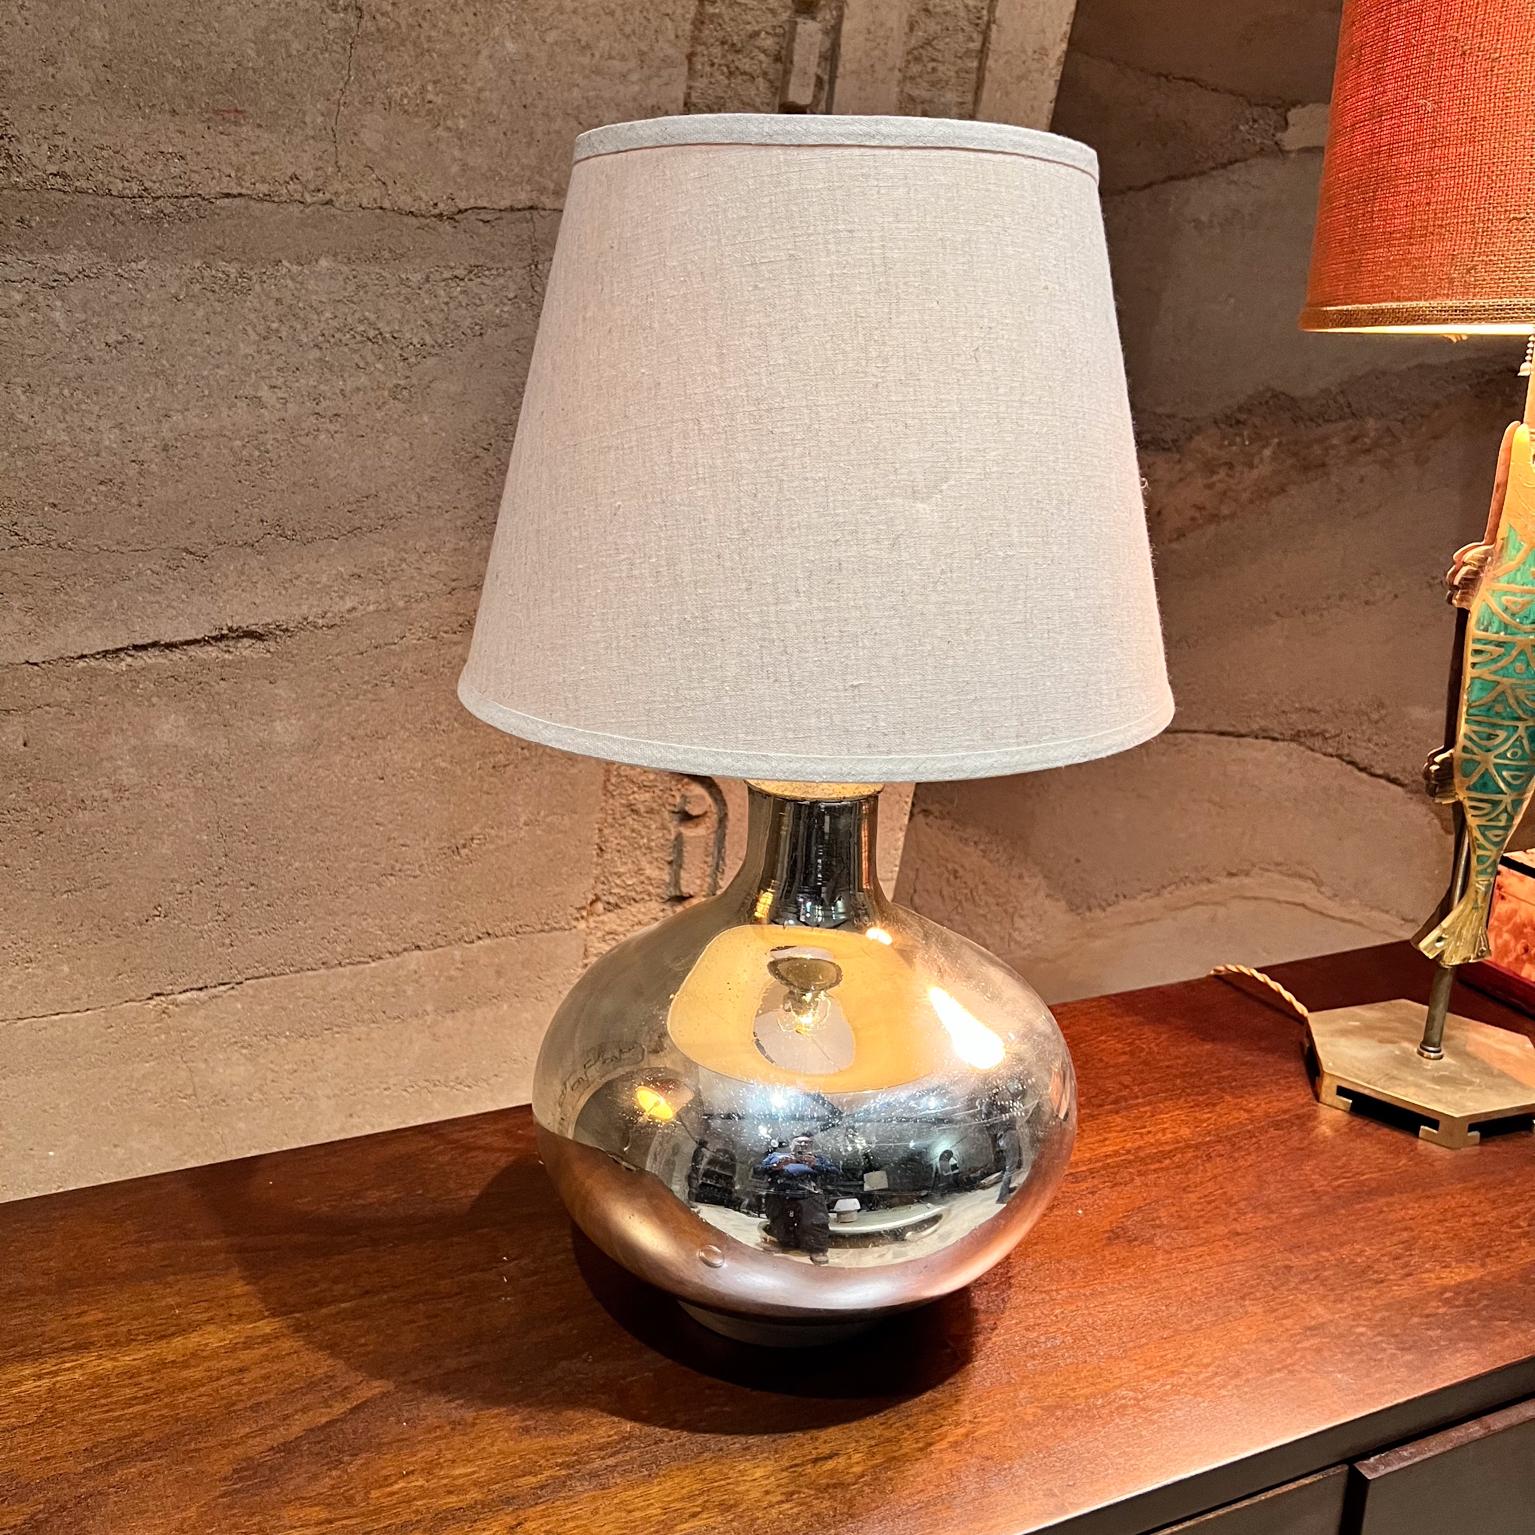 Lampe de table au mercure des années 1950 Style Luis Barragan Mexique
Base en bois avec feuille d'argent. 
Douille de 18 h x diamètre de 13
Recâblage Nouvelle prise, cordon torsadé en or et nouvelle fiche avec nouvel interrupteur. 
Testé et